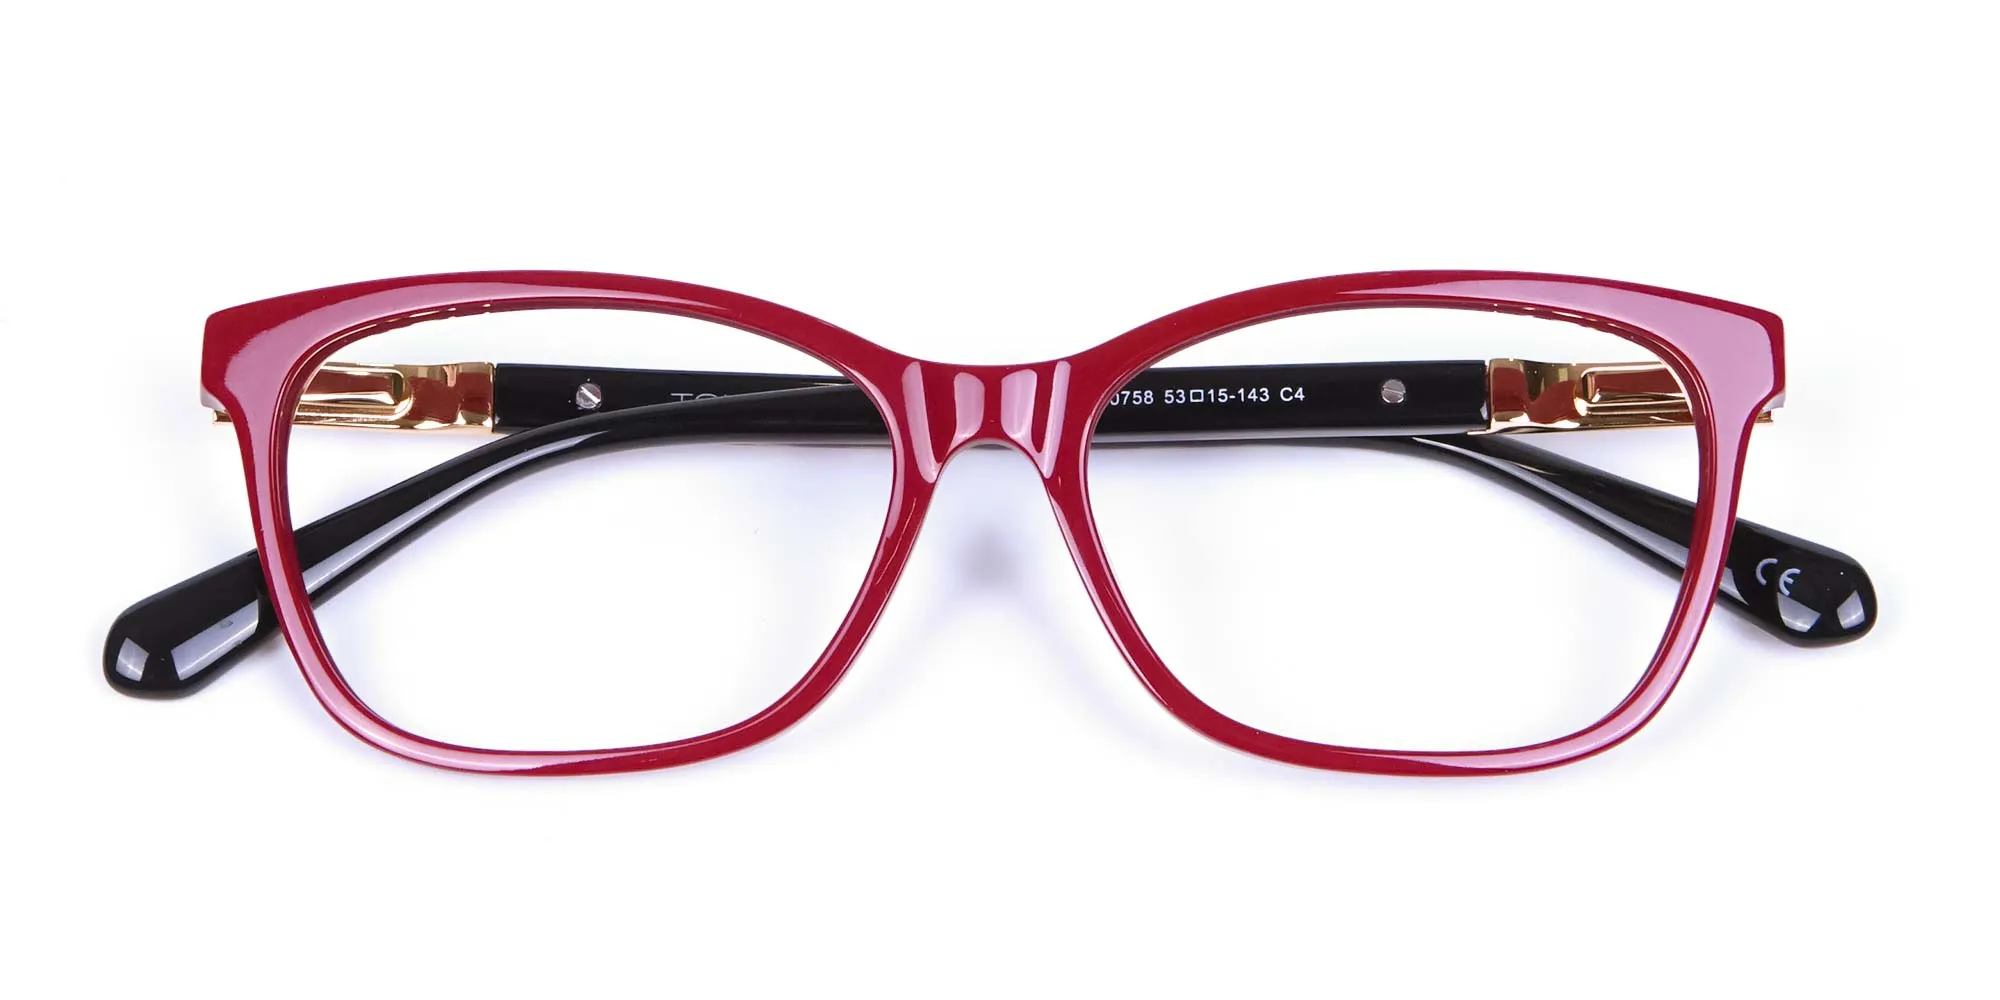 Retro Red Cat Eye Glasses for Women - 1